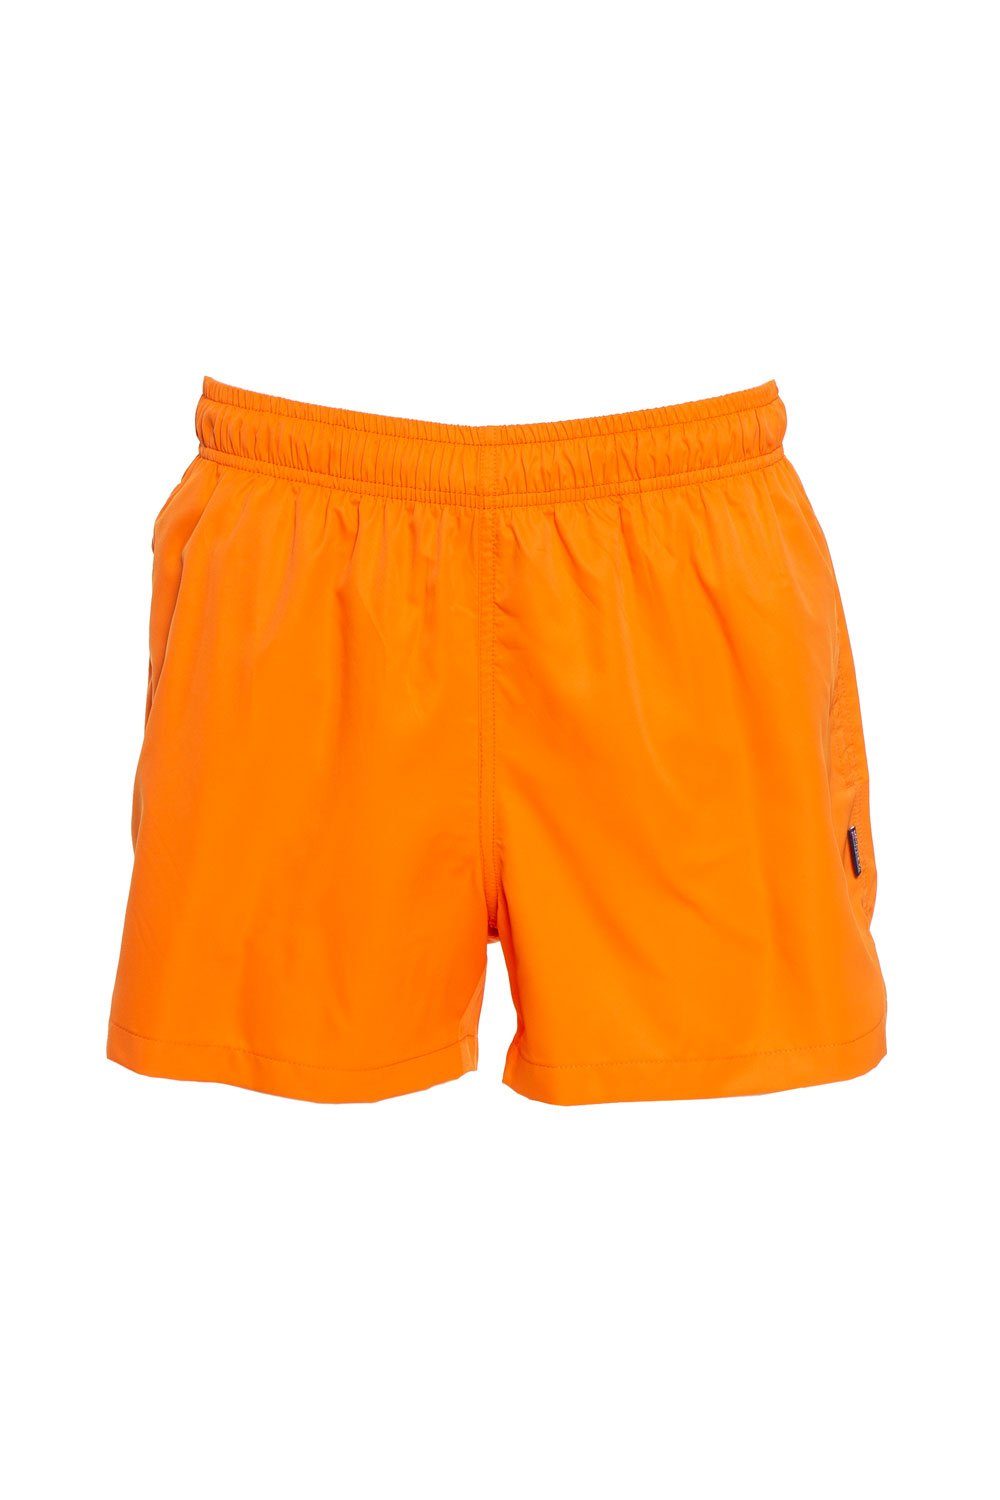 Jockey Badehose Swim Shorts 60019 orange pop